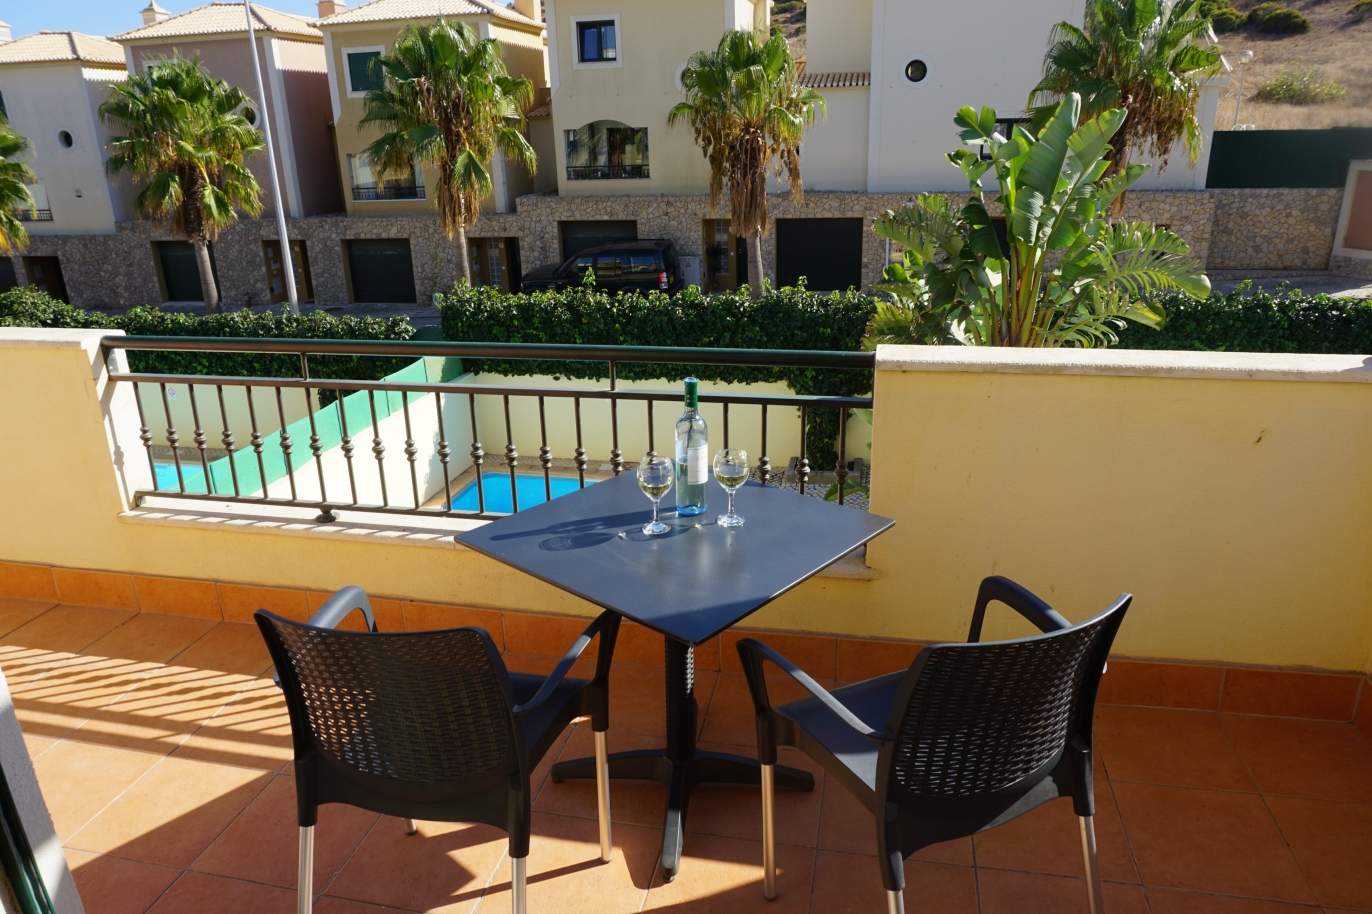 Sale of villa with pool in Budens, Vila do Bispo, Algarve, Portugal_118790